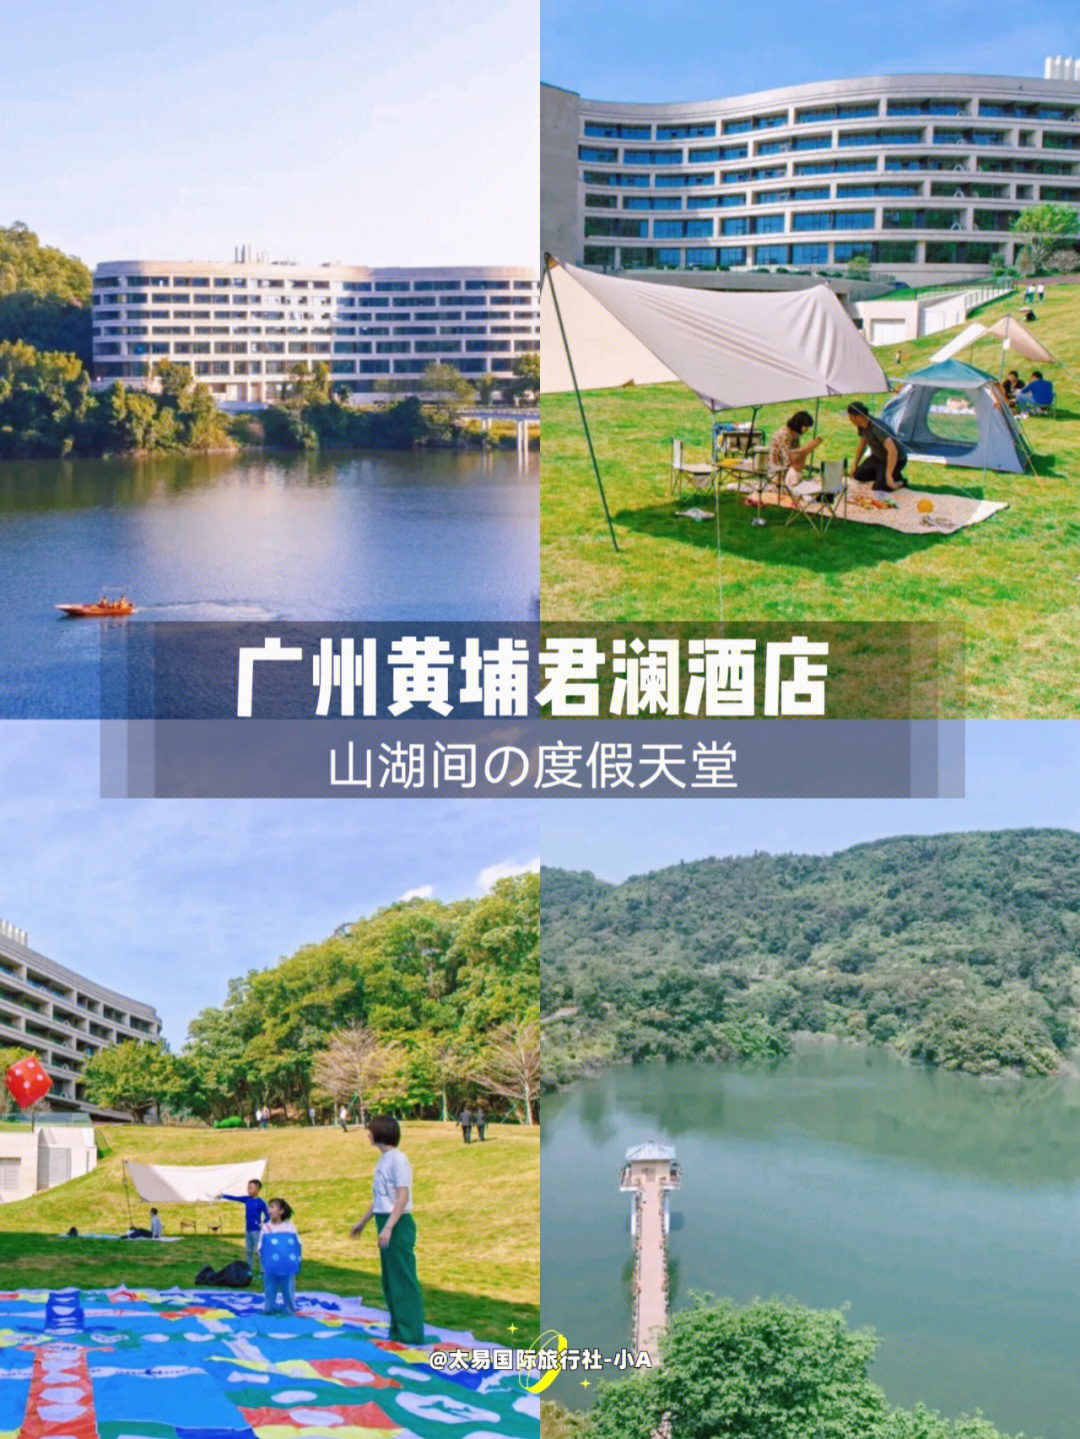 广州黄埔君澜酒店拥有6000㎡皇家草坪95,还自带湿地公园低至90669